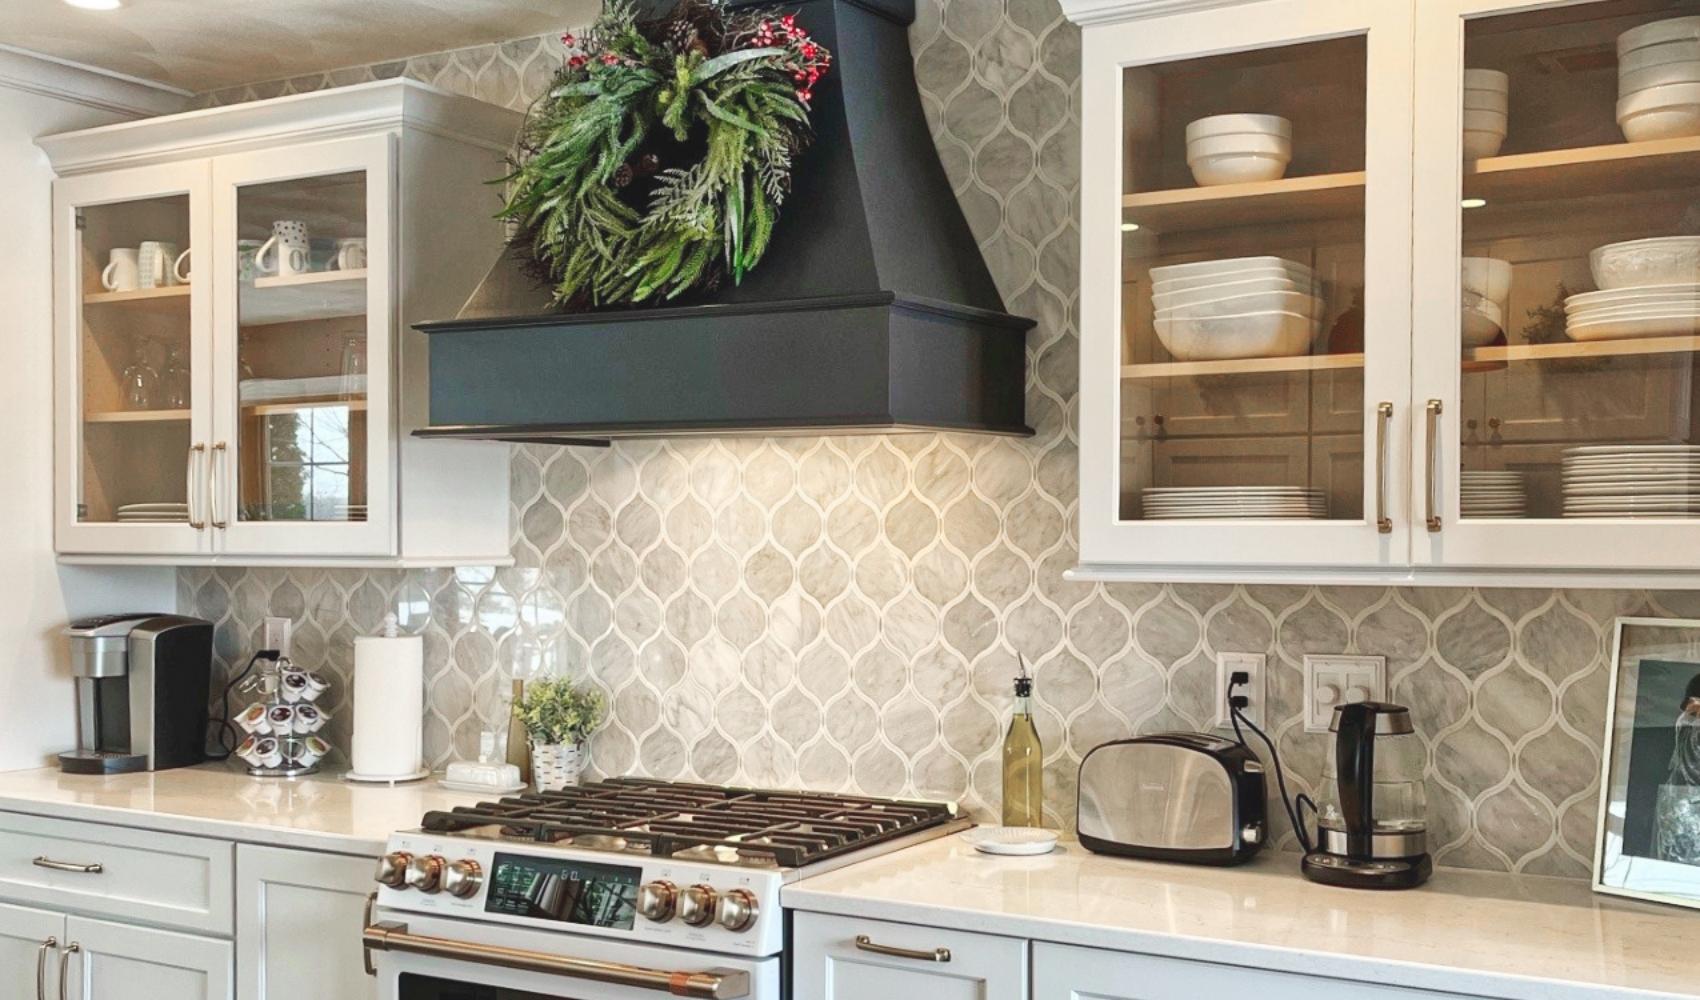 kitchen remodel with grey tile backsplash